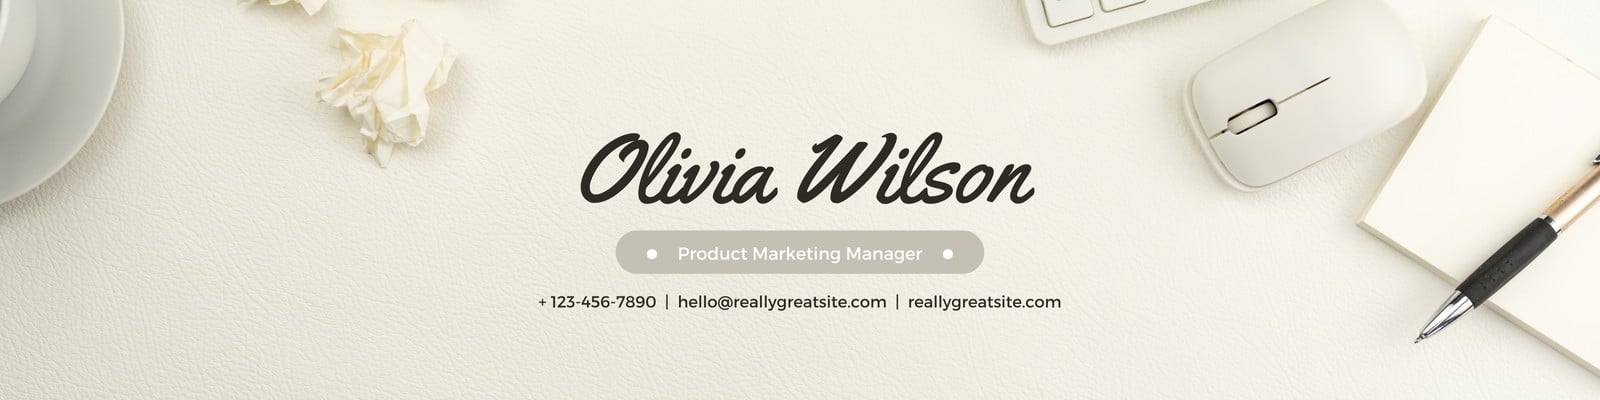 Cream Minimalist Corporate Personal Profile LinkedIn Banner